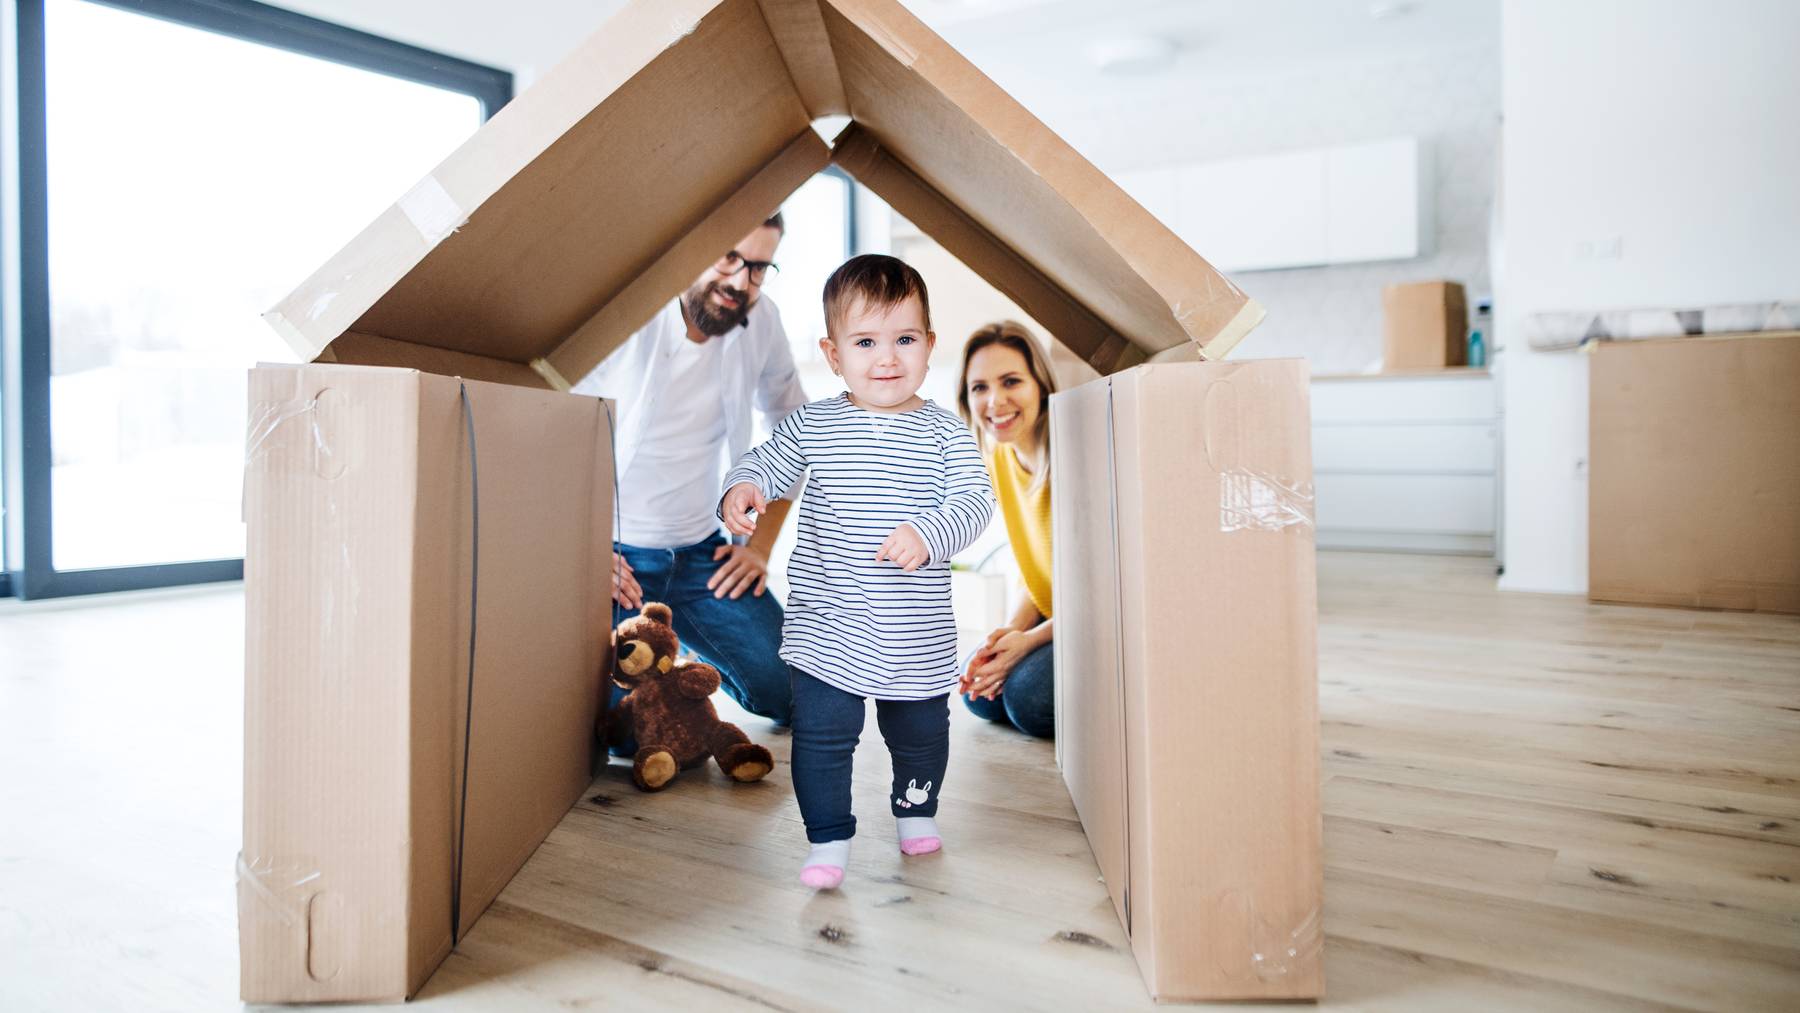 Ein Kleinkind geht durch ein aus Kartons und Kisten gebautes Haus auf die Kamera zu. Dahinter sind die Eltern zu sehen.